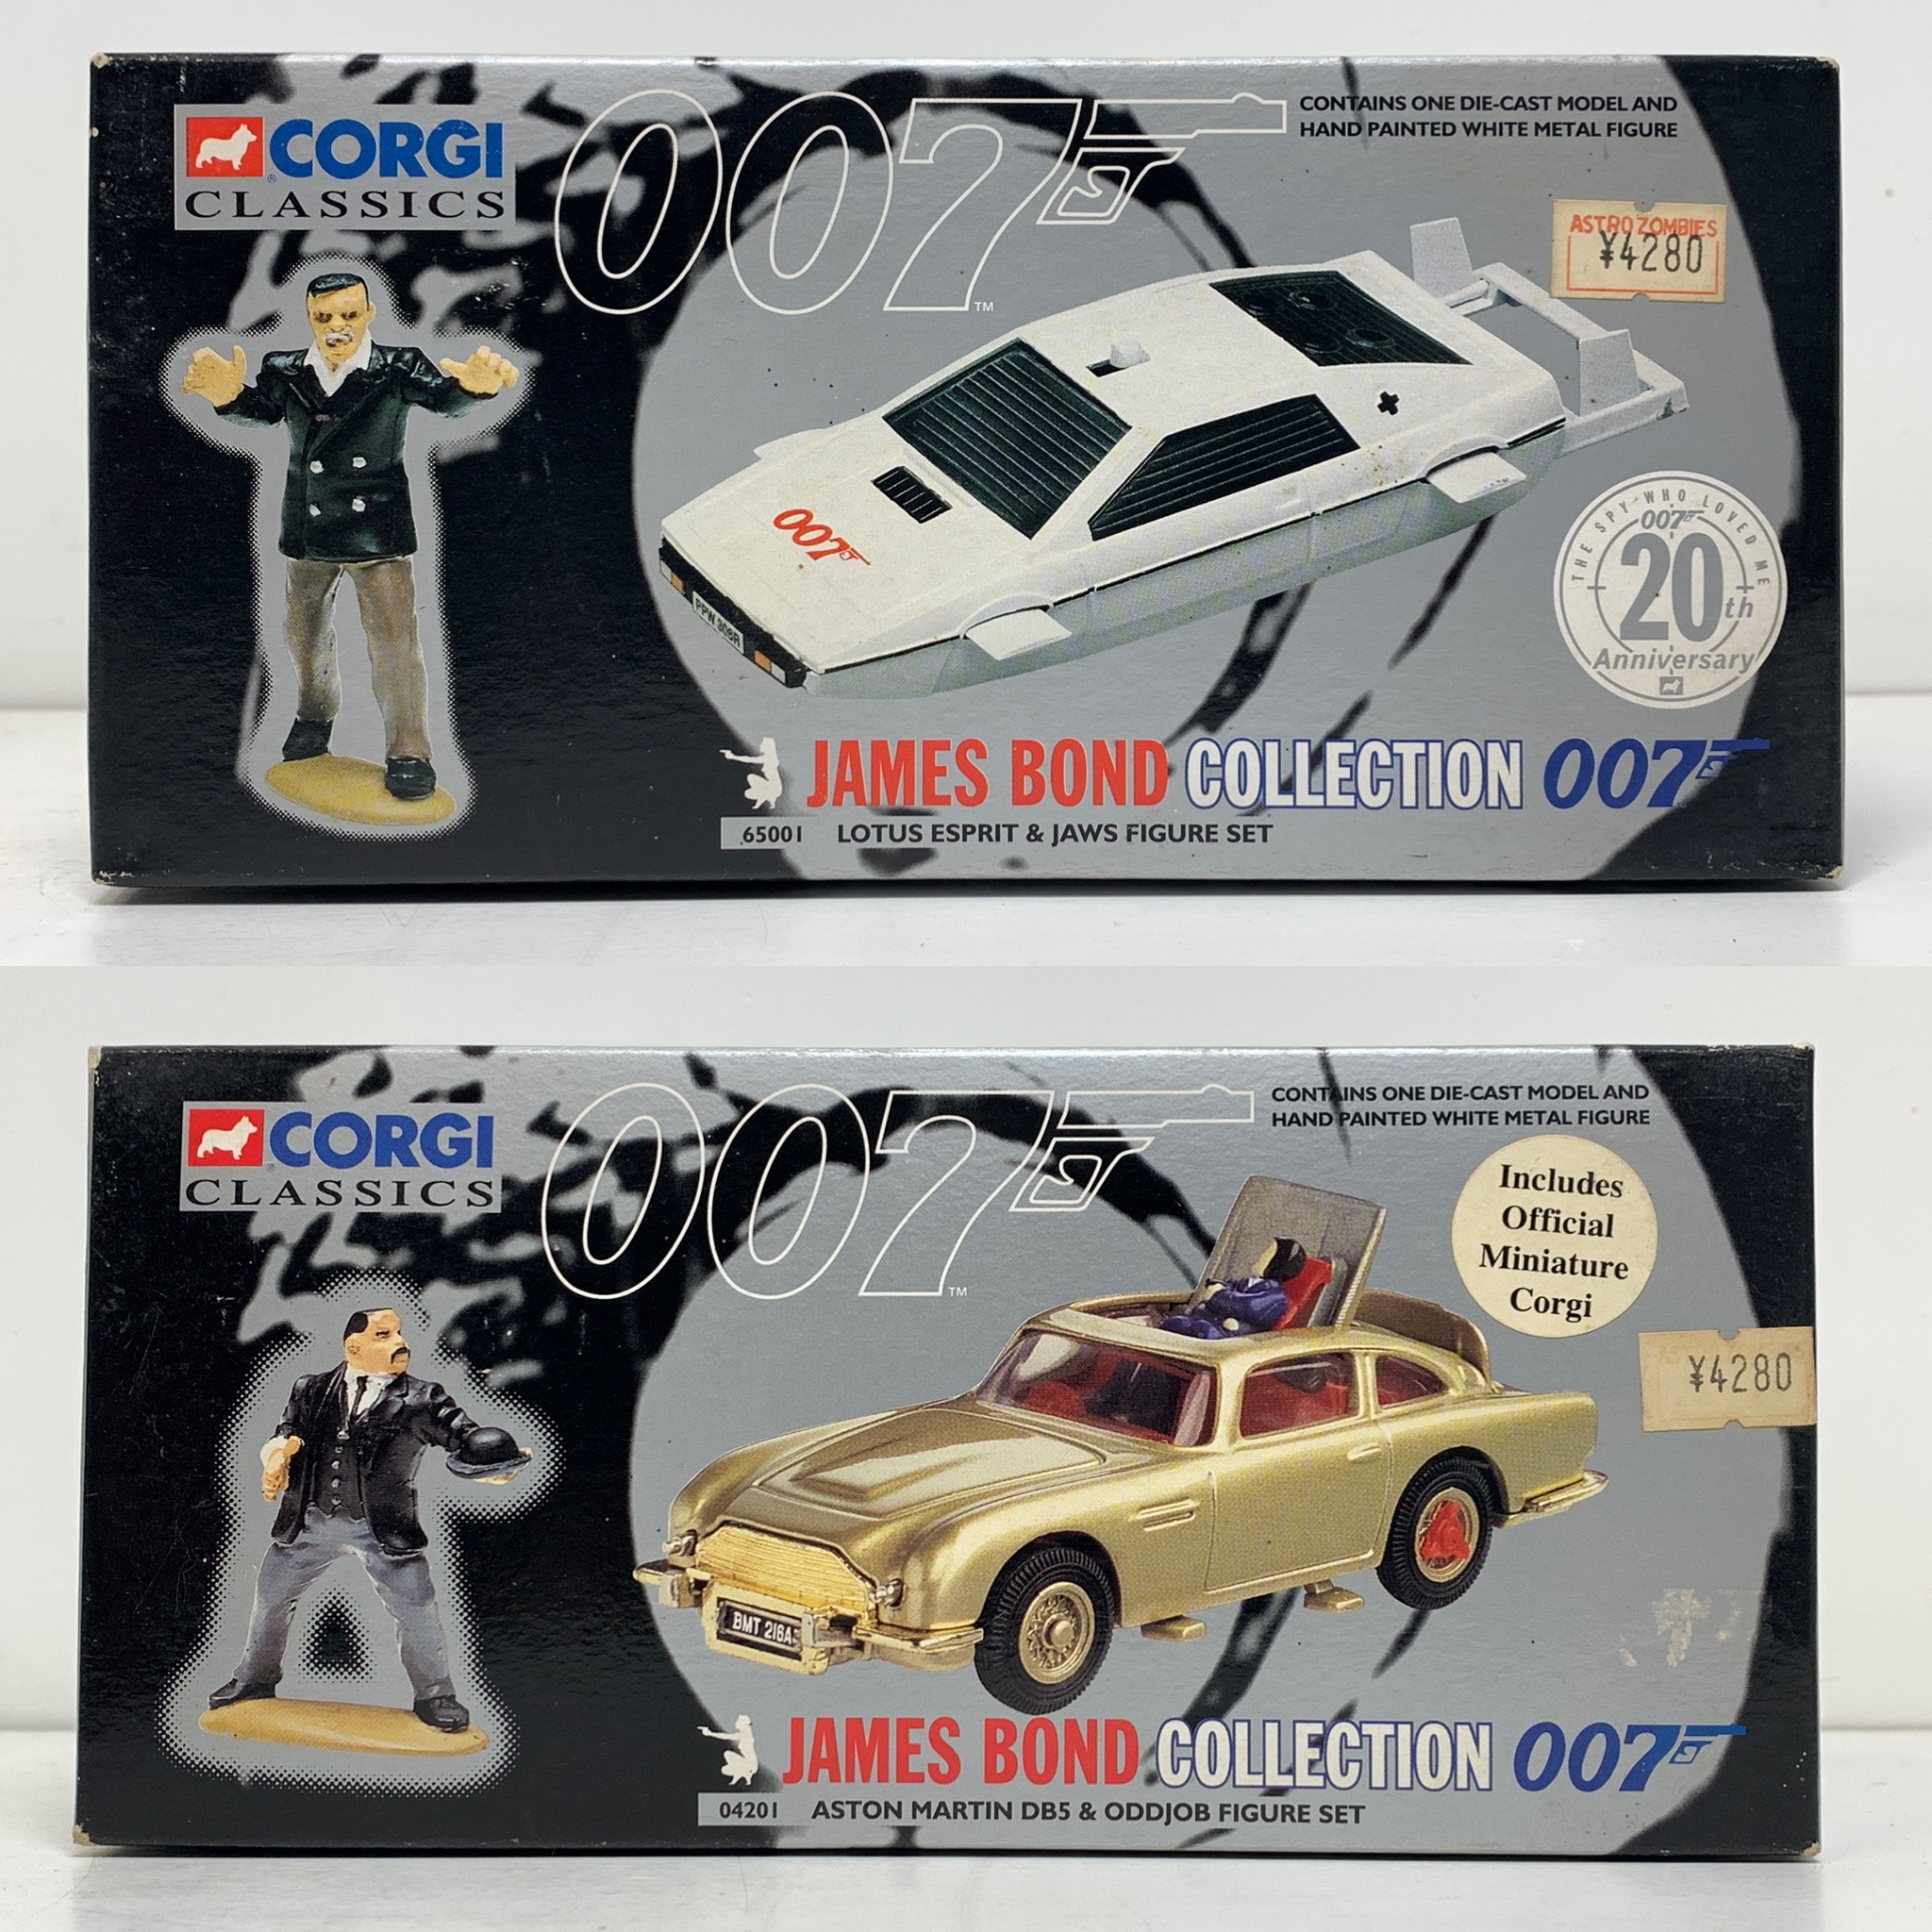 CORGI CLASSICS JAMES BOND COLLECTION 007 コーギー ジェームス・ボンド・コレクション 出張買取  東京コレクターズ